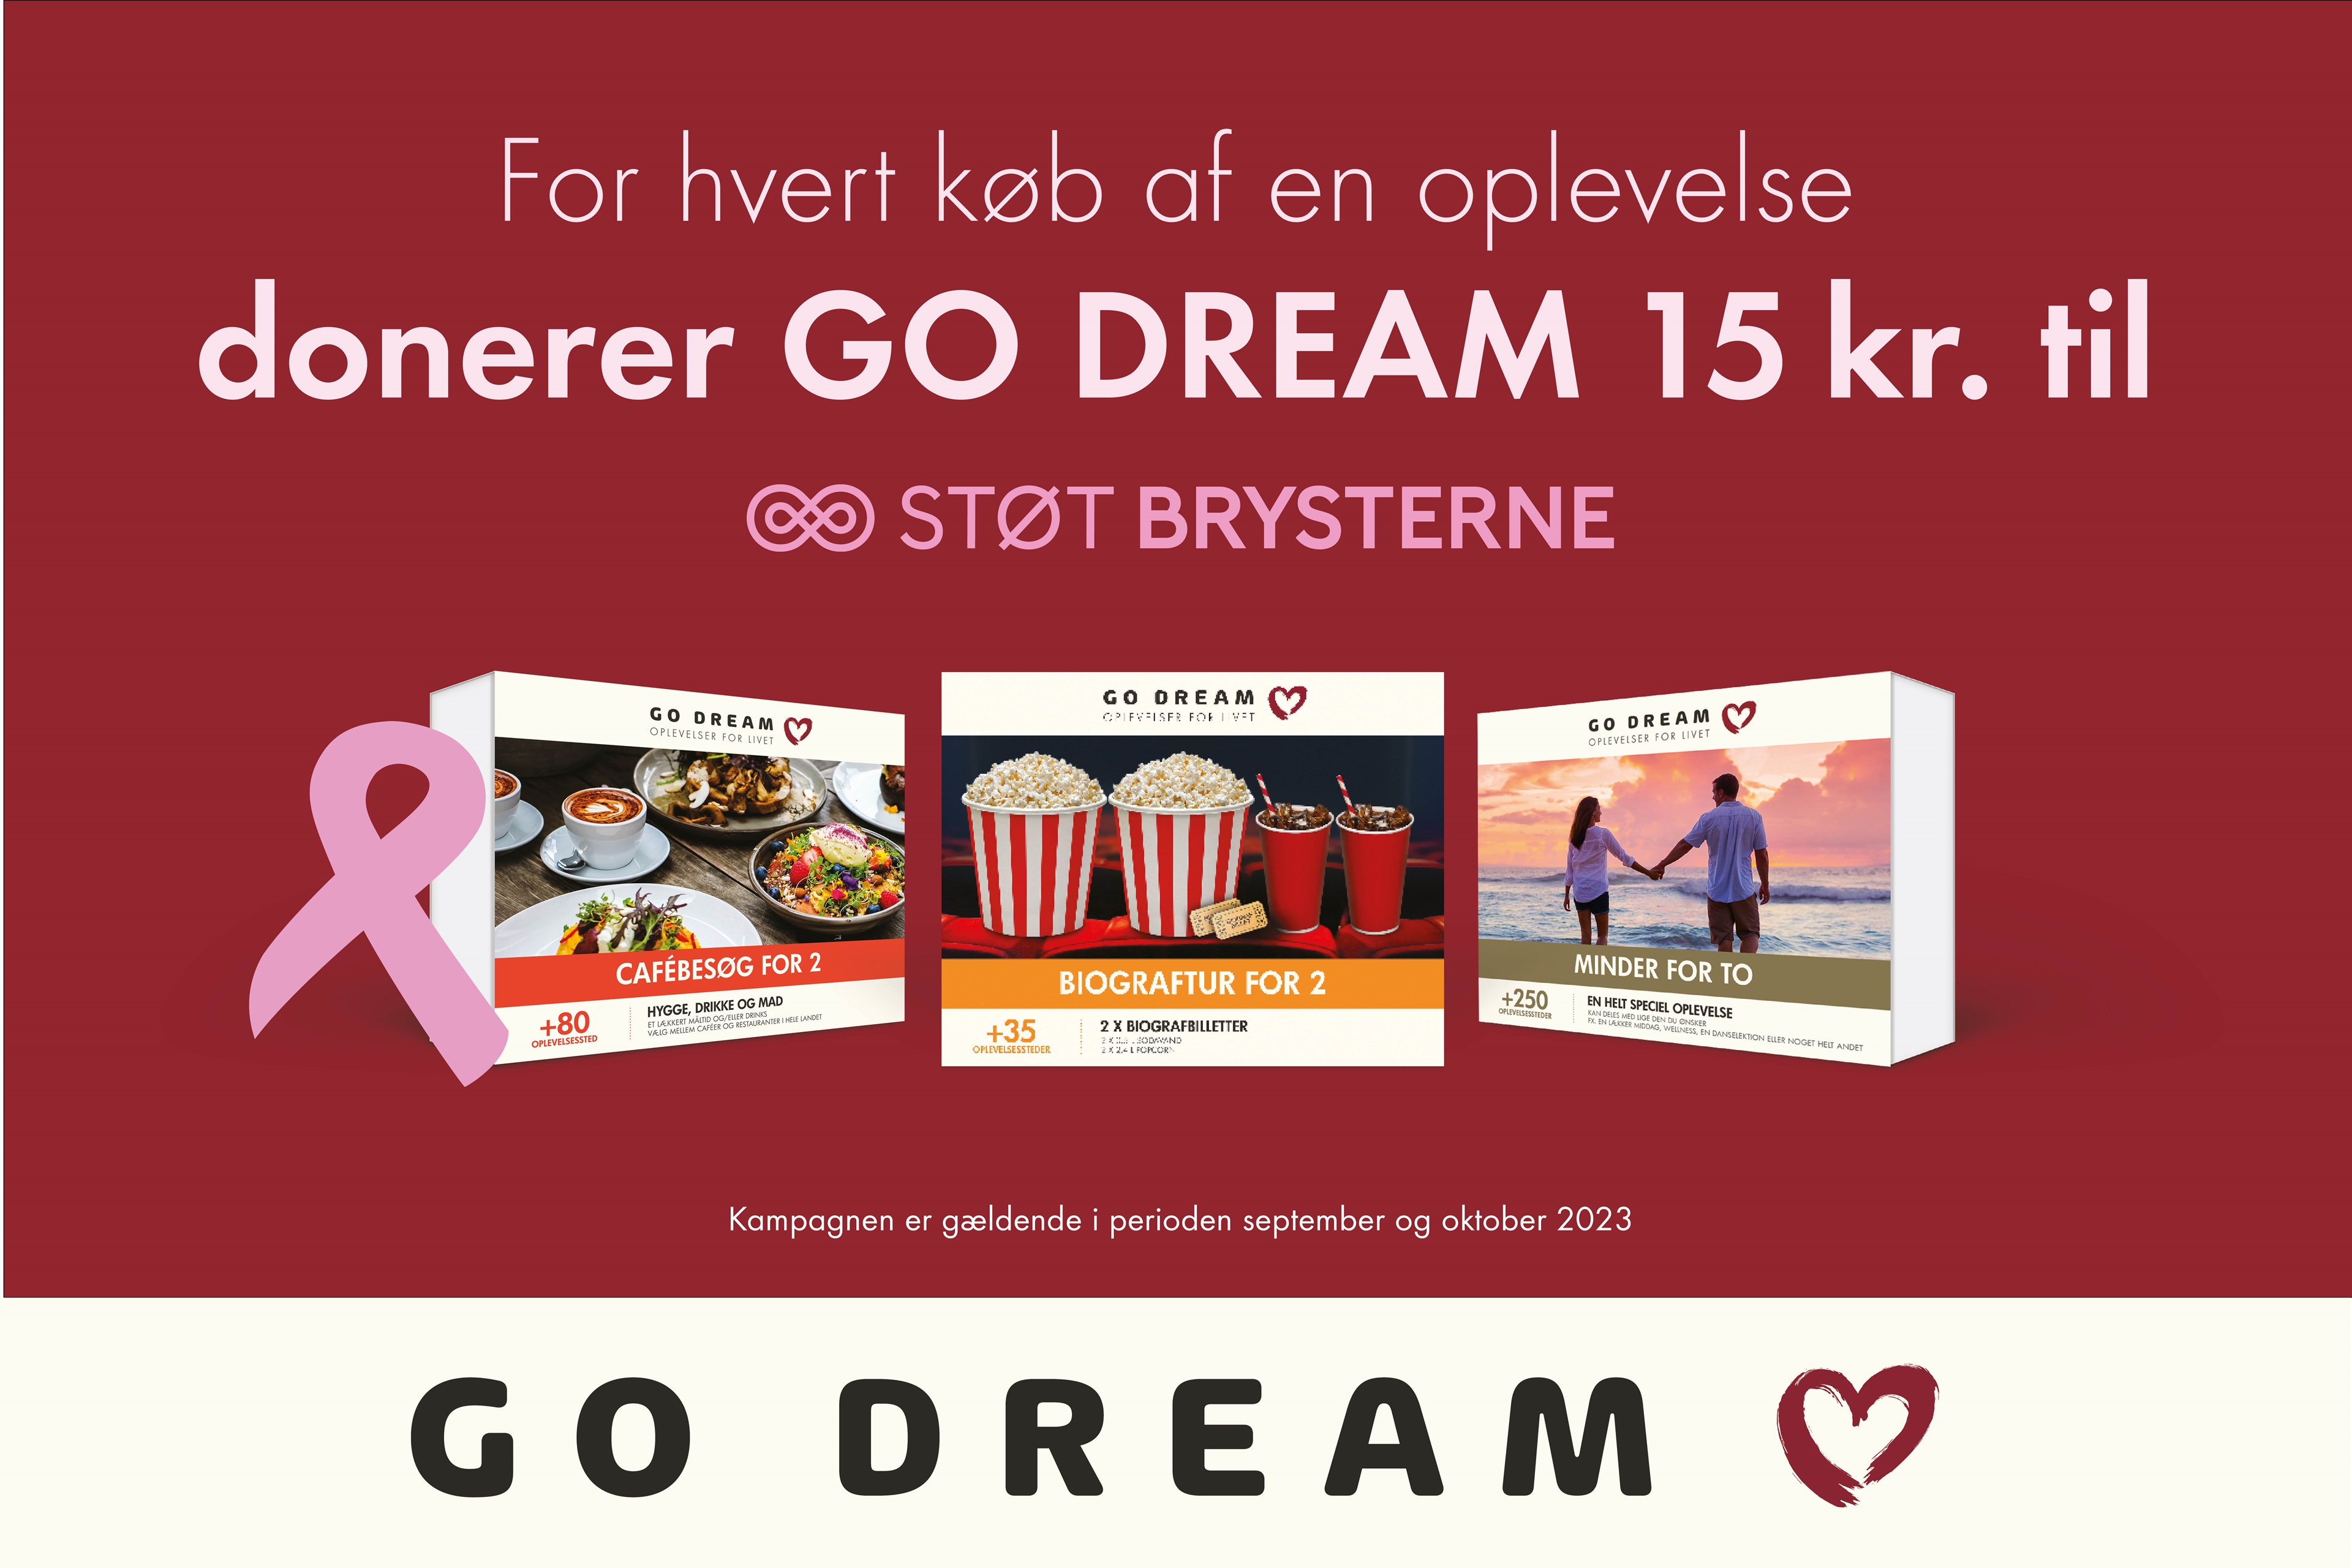 Go dream donerer Go Dream 15 kr